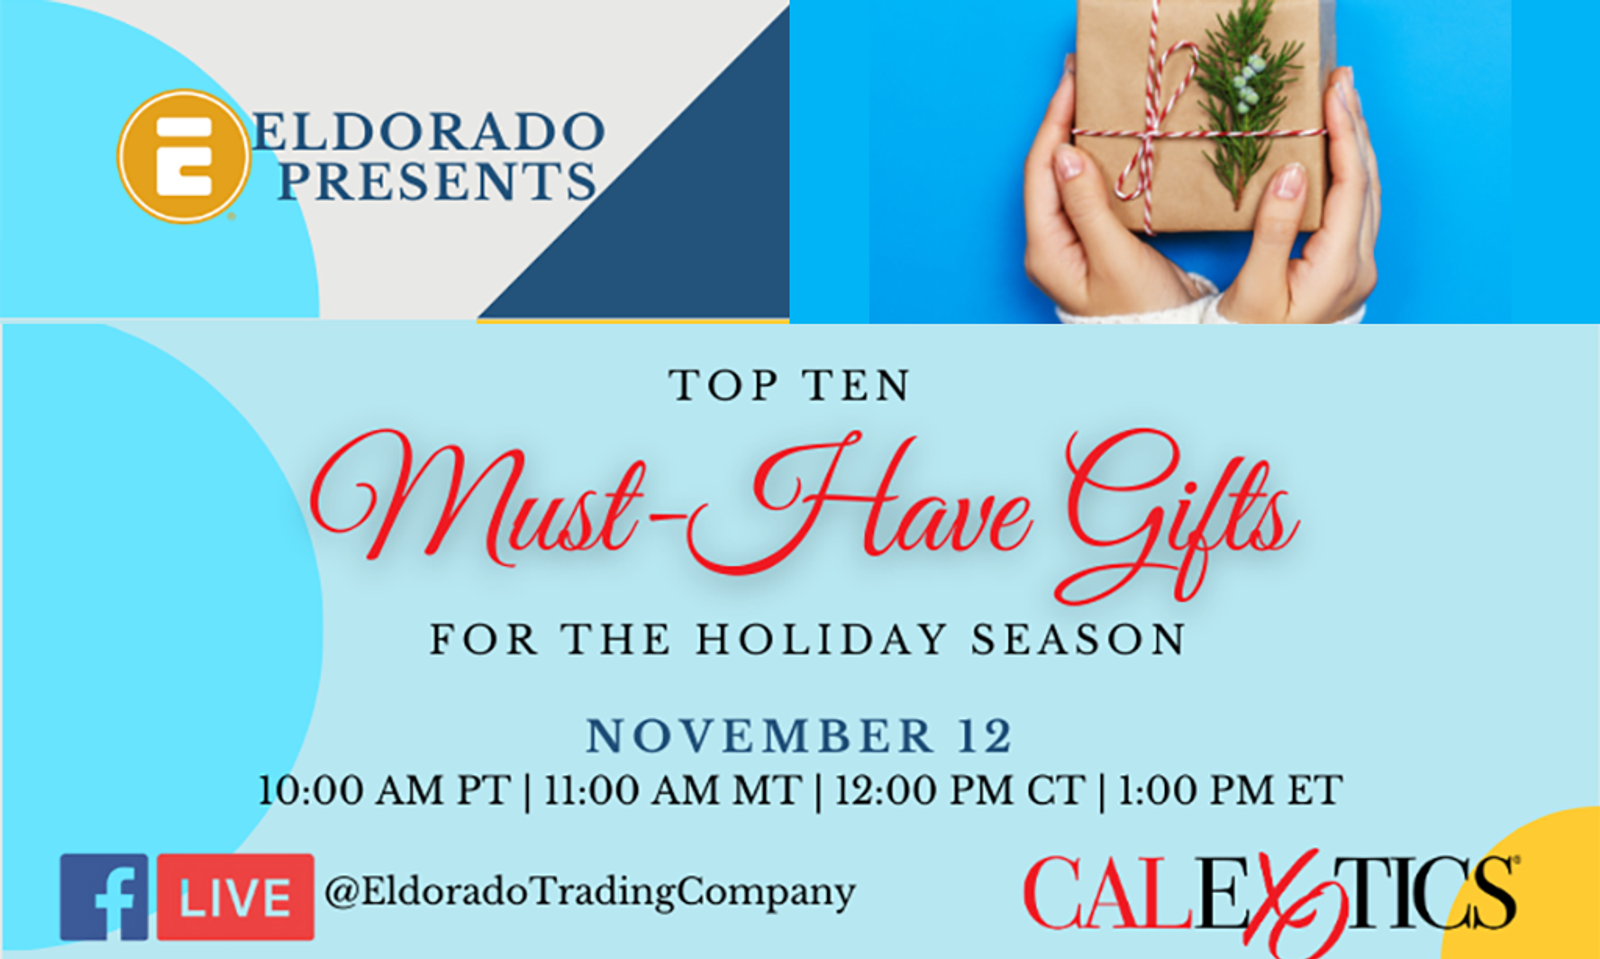 Eldorado to Offer Top Ten Gift Ideas for the Holiday Season